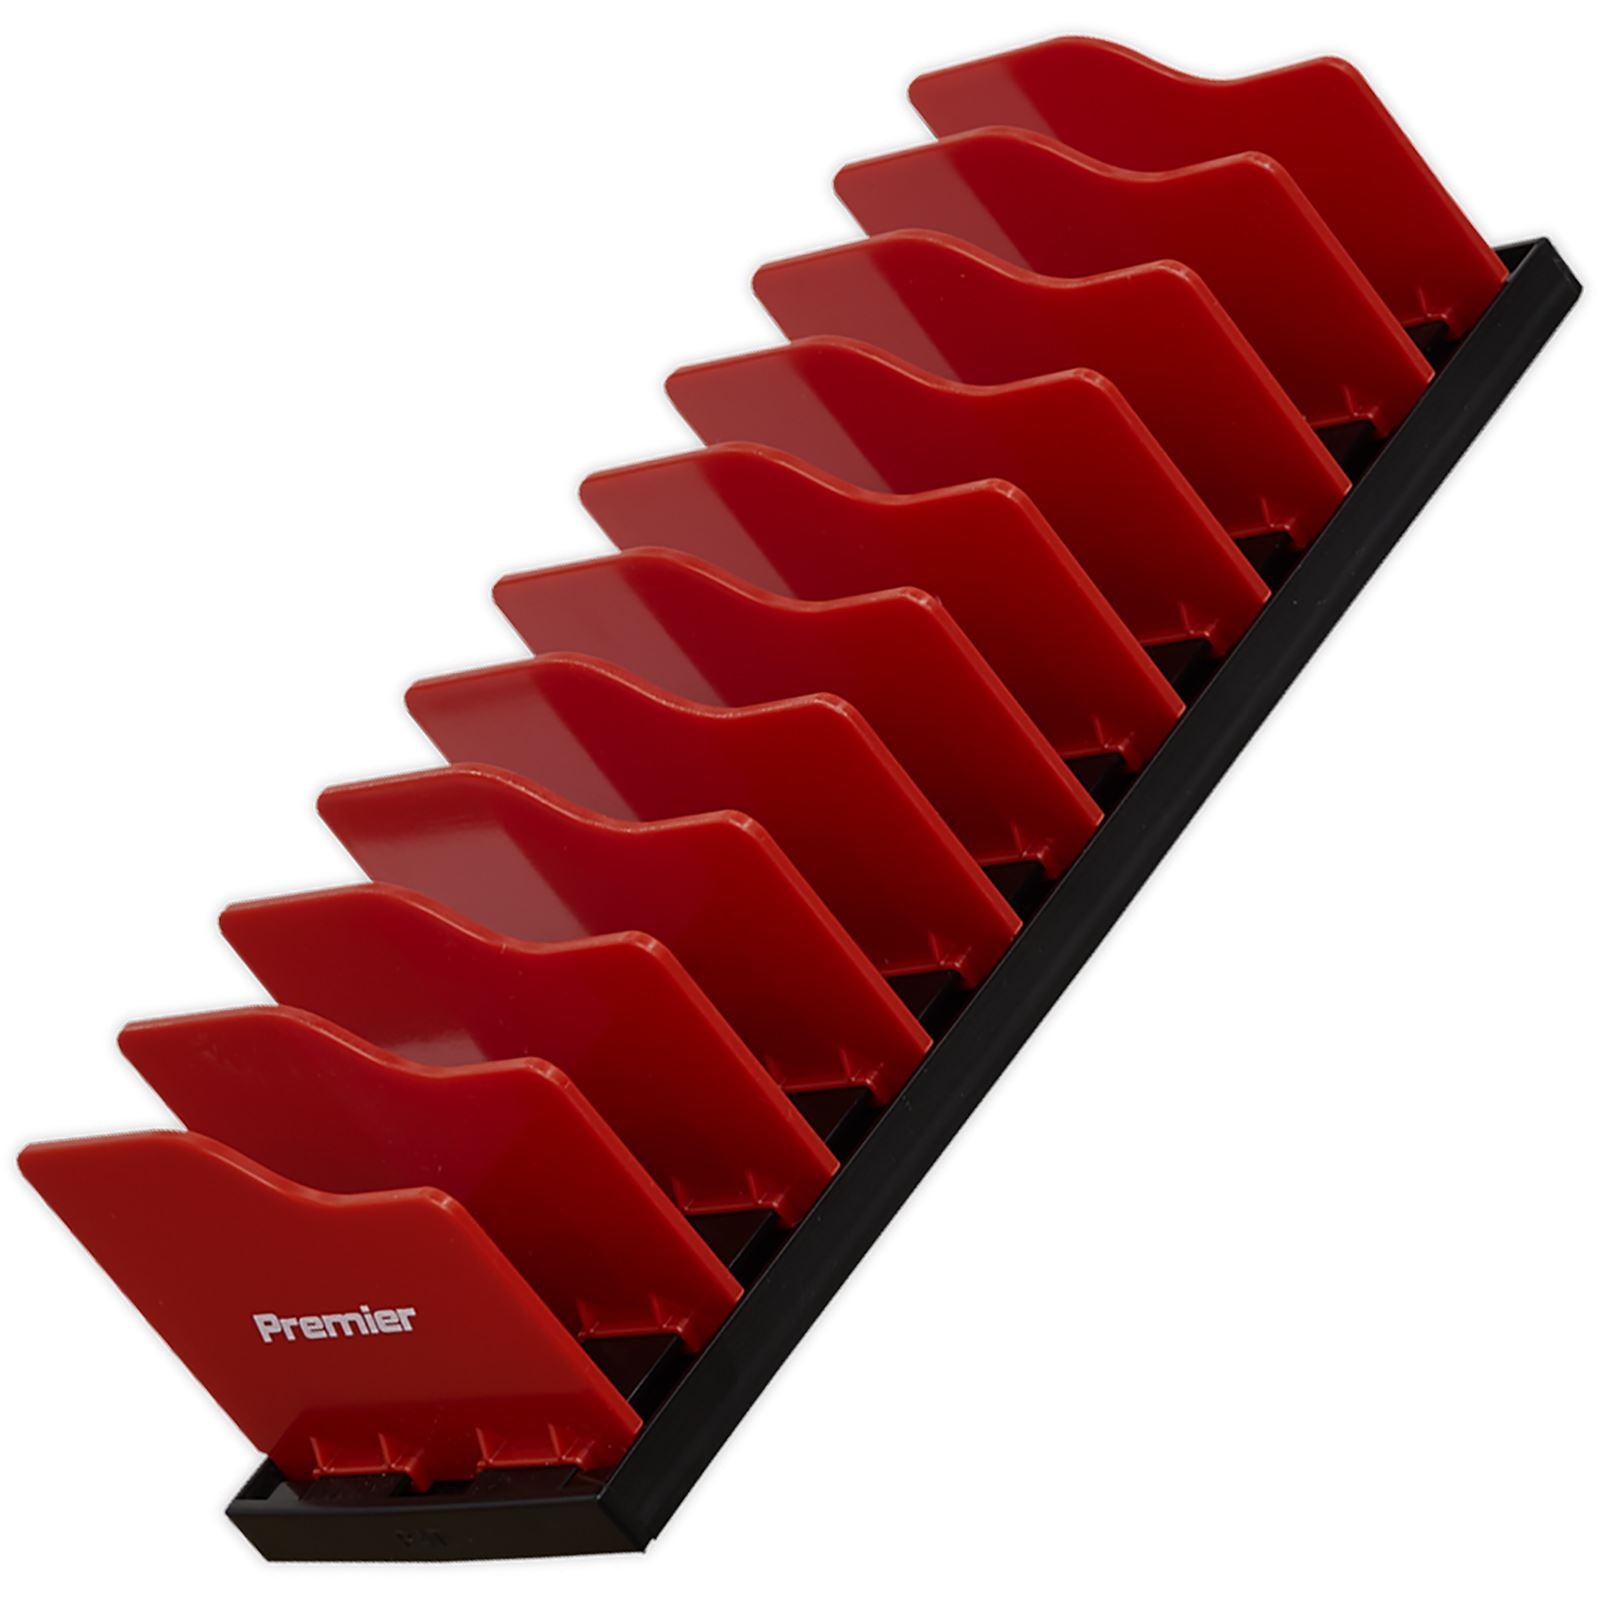 Sealey Premier Pliers Storage Racks with Adjustable Dividers